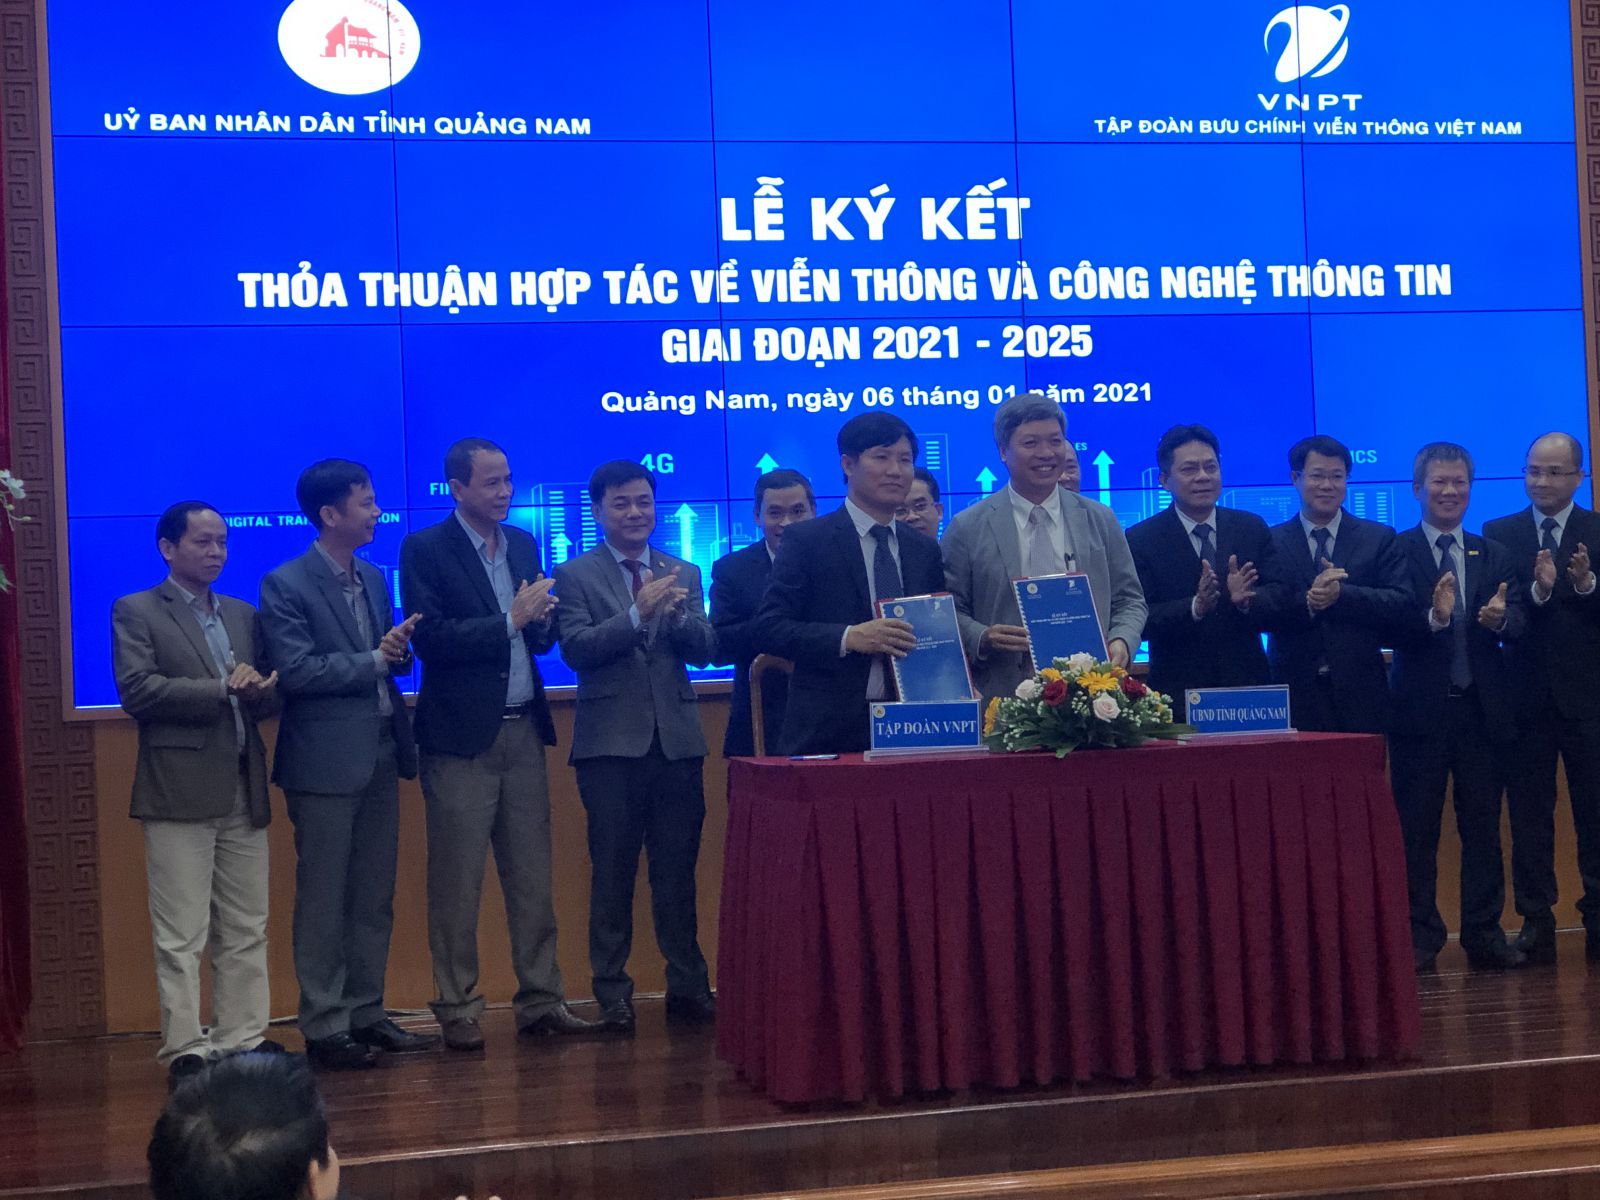 VNPT ưu tiên triển khai cho tỉnh các giải pháp, công nghệ tiên tiến nhất trong lĩnh vực VT-CNTT để Quảng Nam trở thành đô thị thông minh